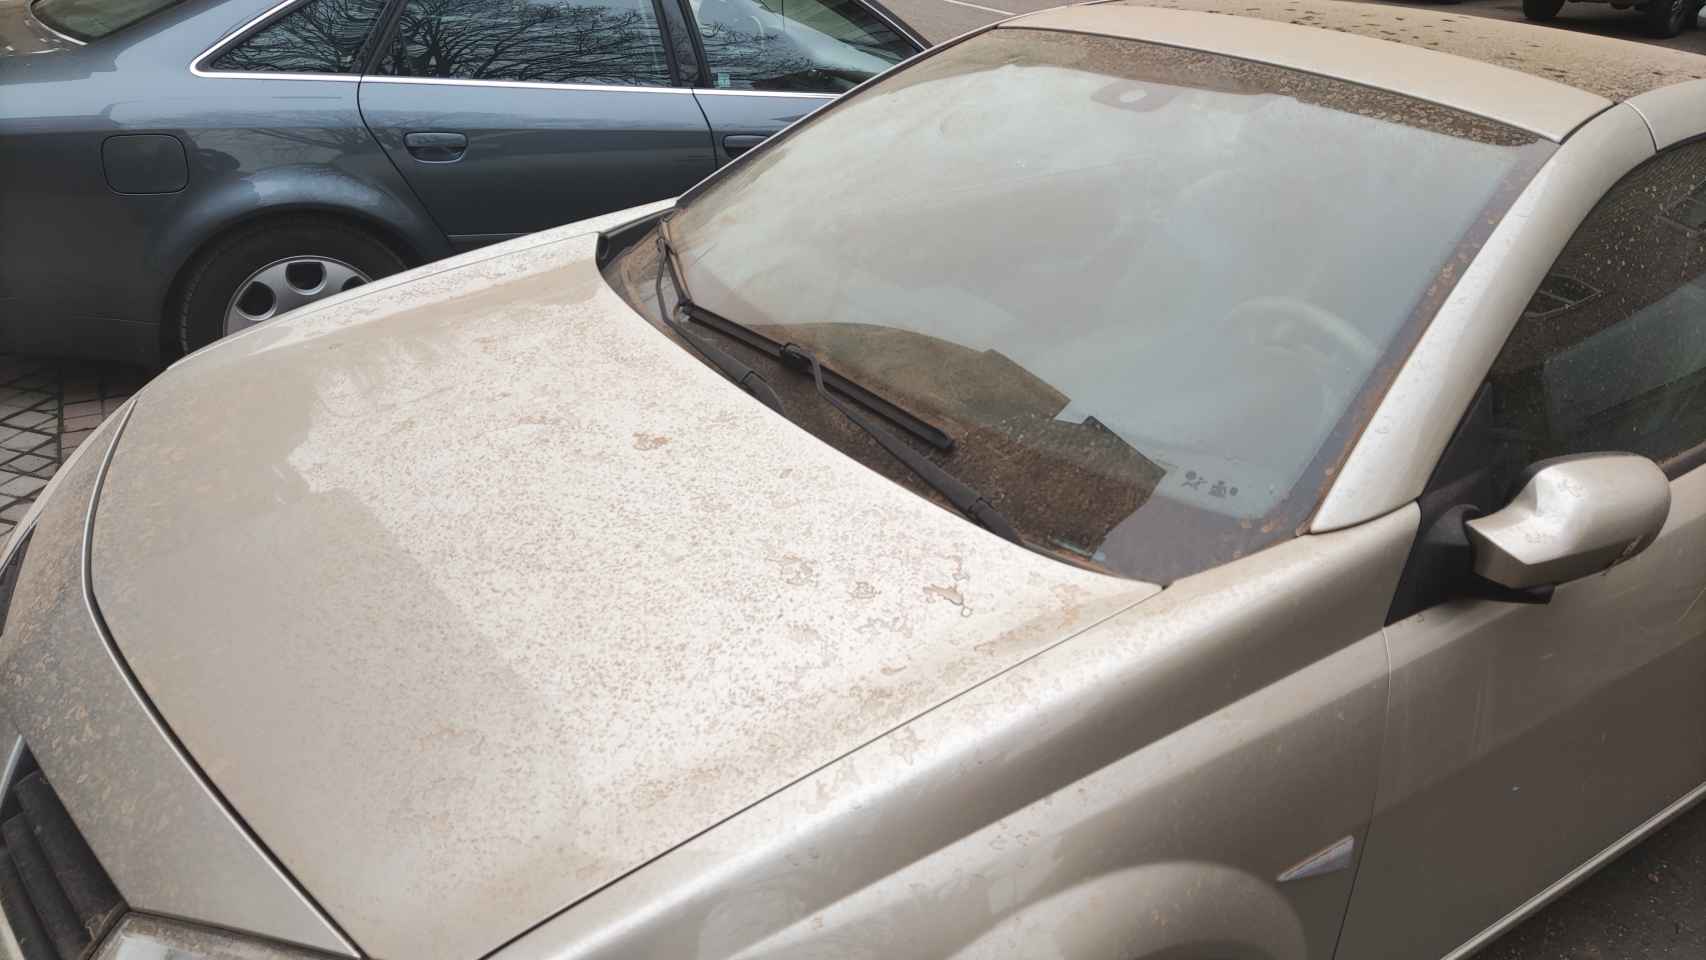 Manto fino de polvo que ha cubierto la superficie  de los coches